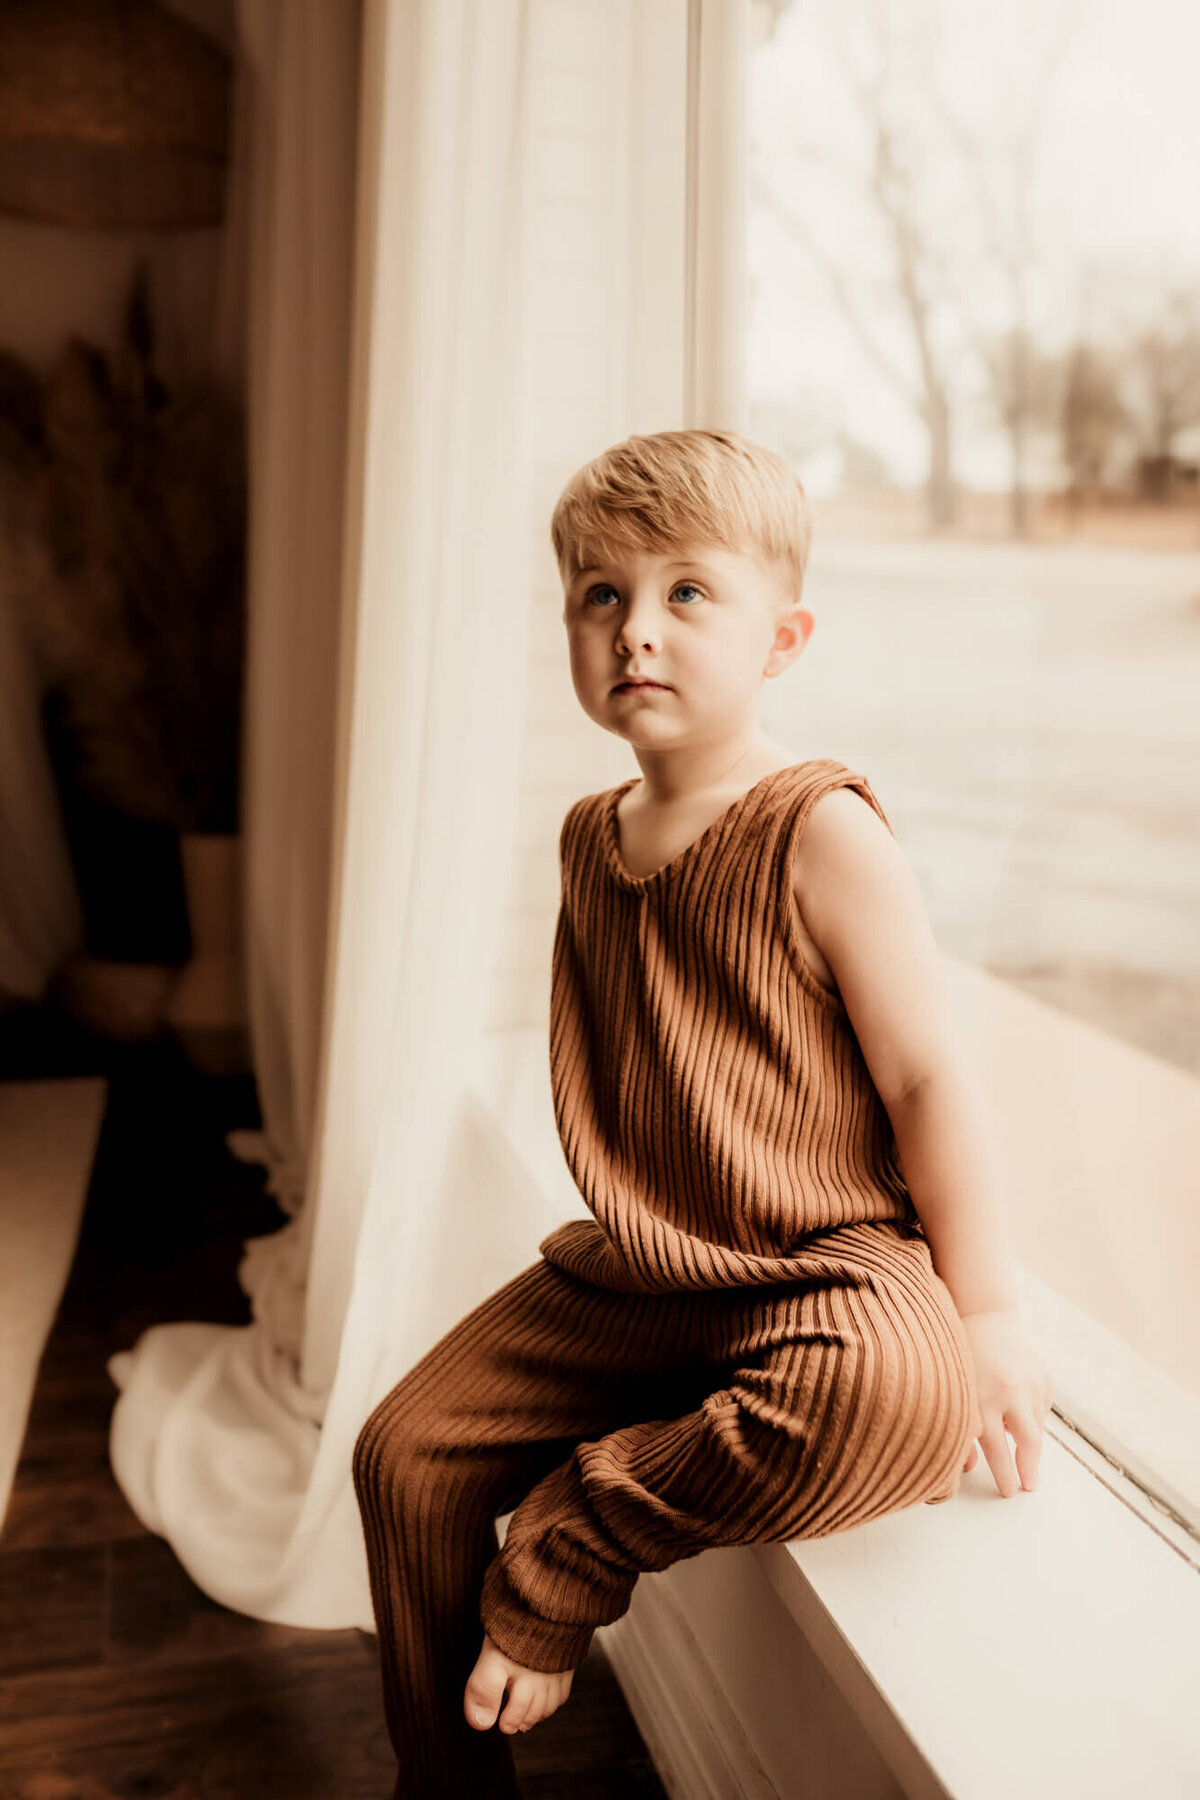 Little boy wearing a brown romper sitting on a window ledge.